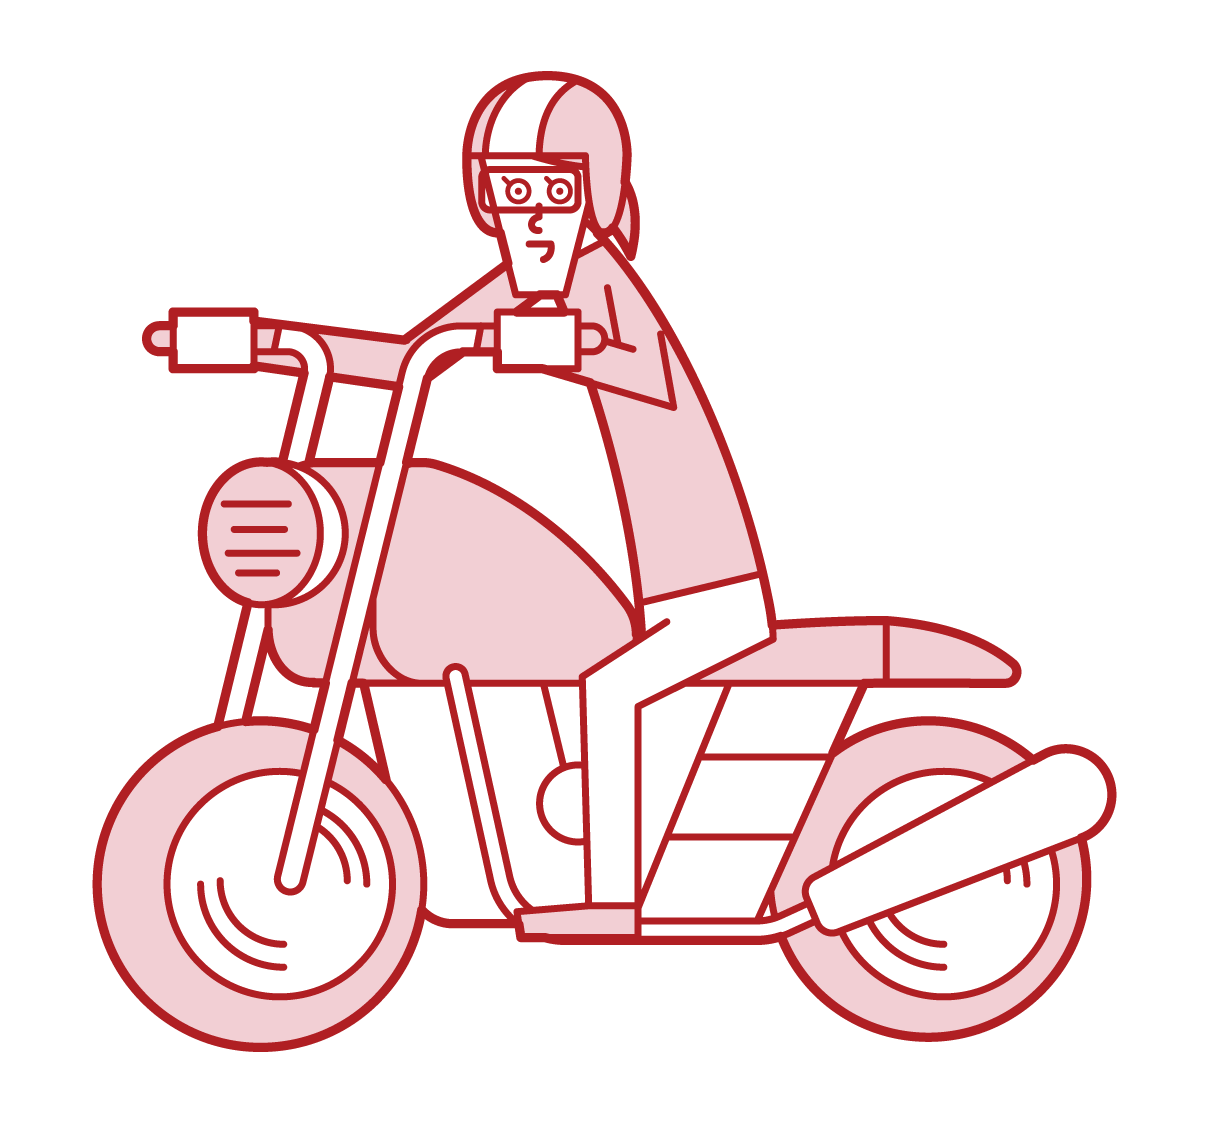 오토바이를 운전하는 사람 (여성)의 그림